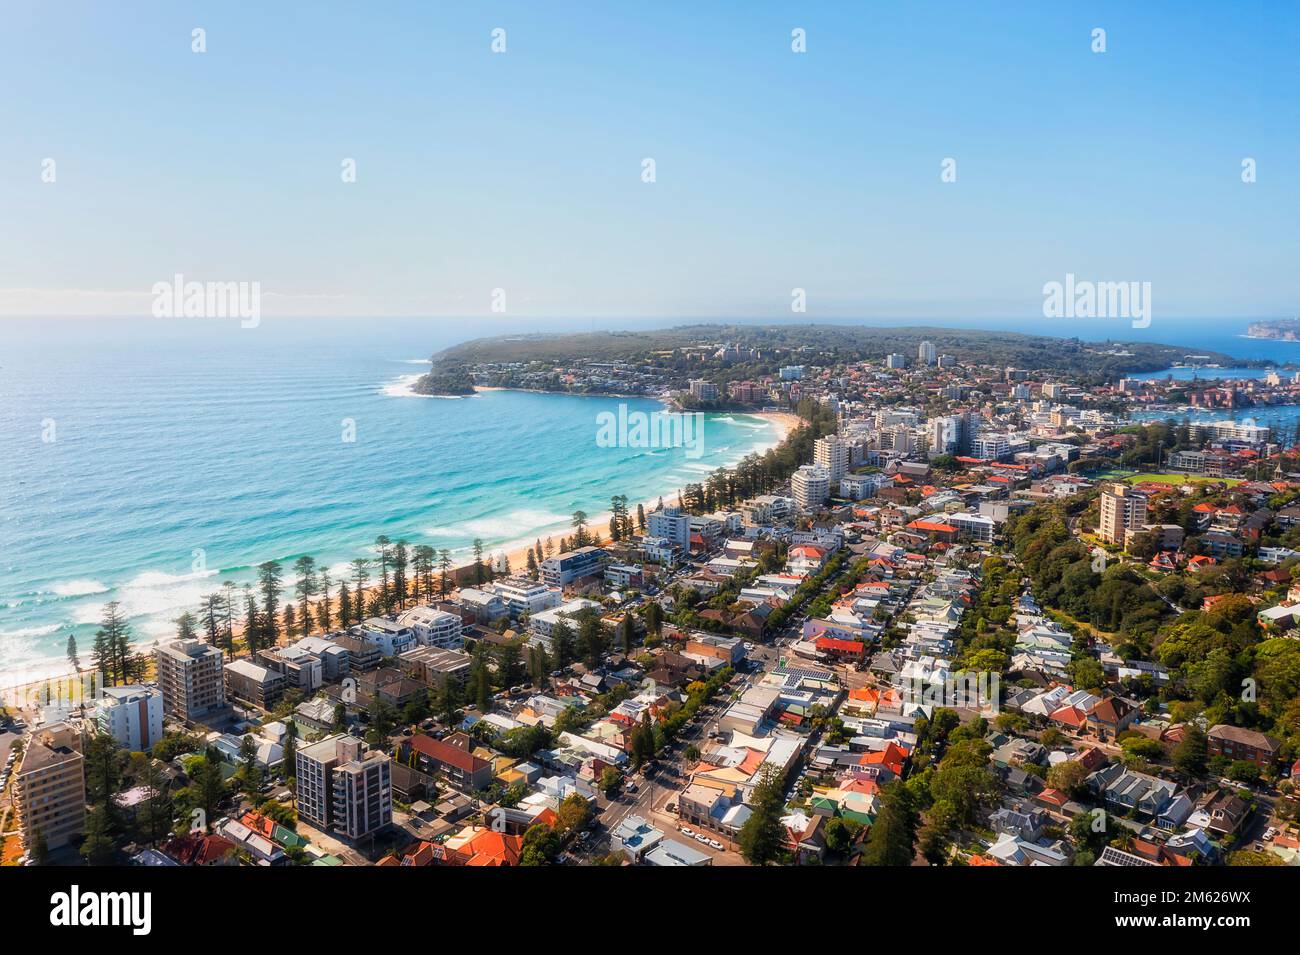 La famosa spiaggia di Manly sulle spiagge settentrionali di Sydney in una vista aerea del paesaggio urbano sul lungomare in una giornata di sole. Foto Stock